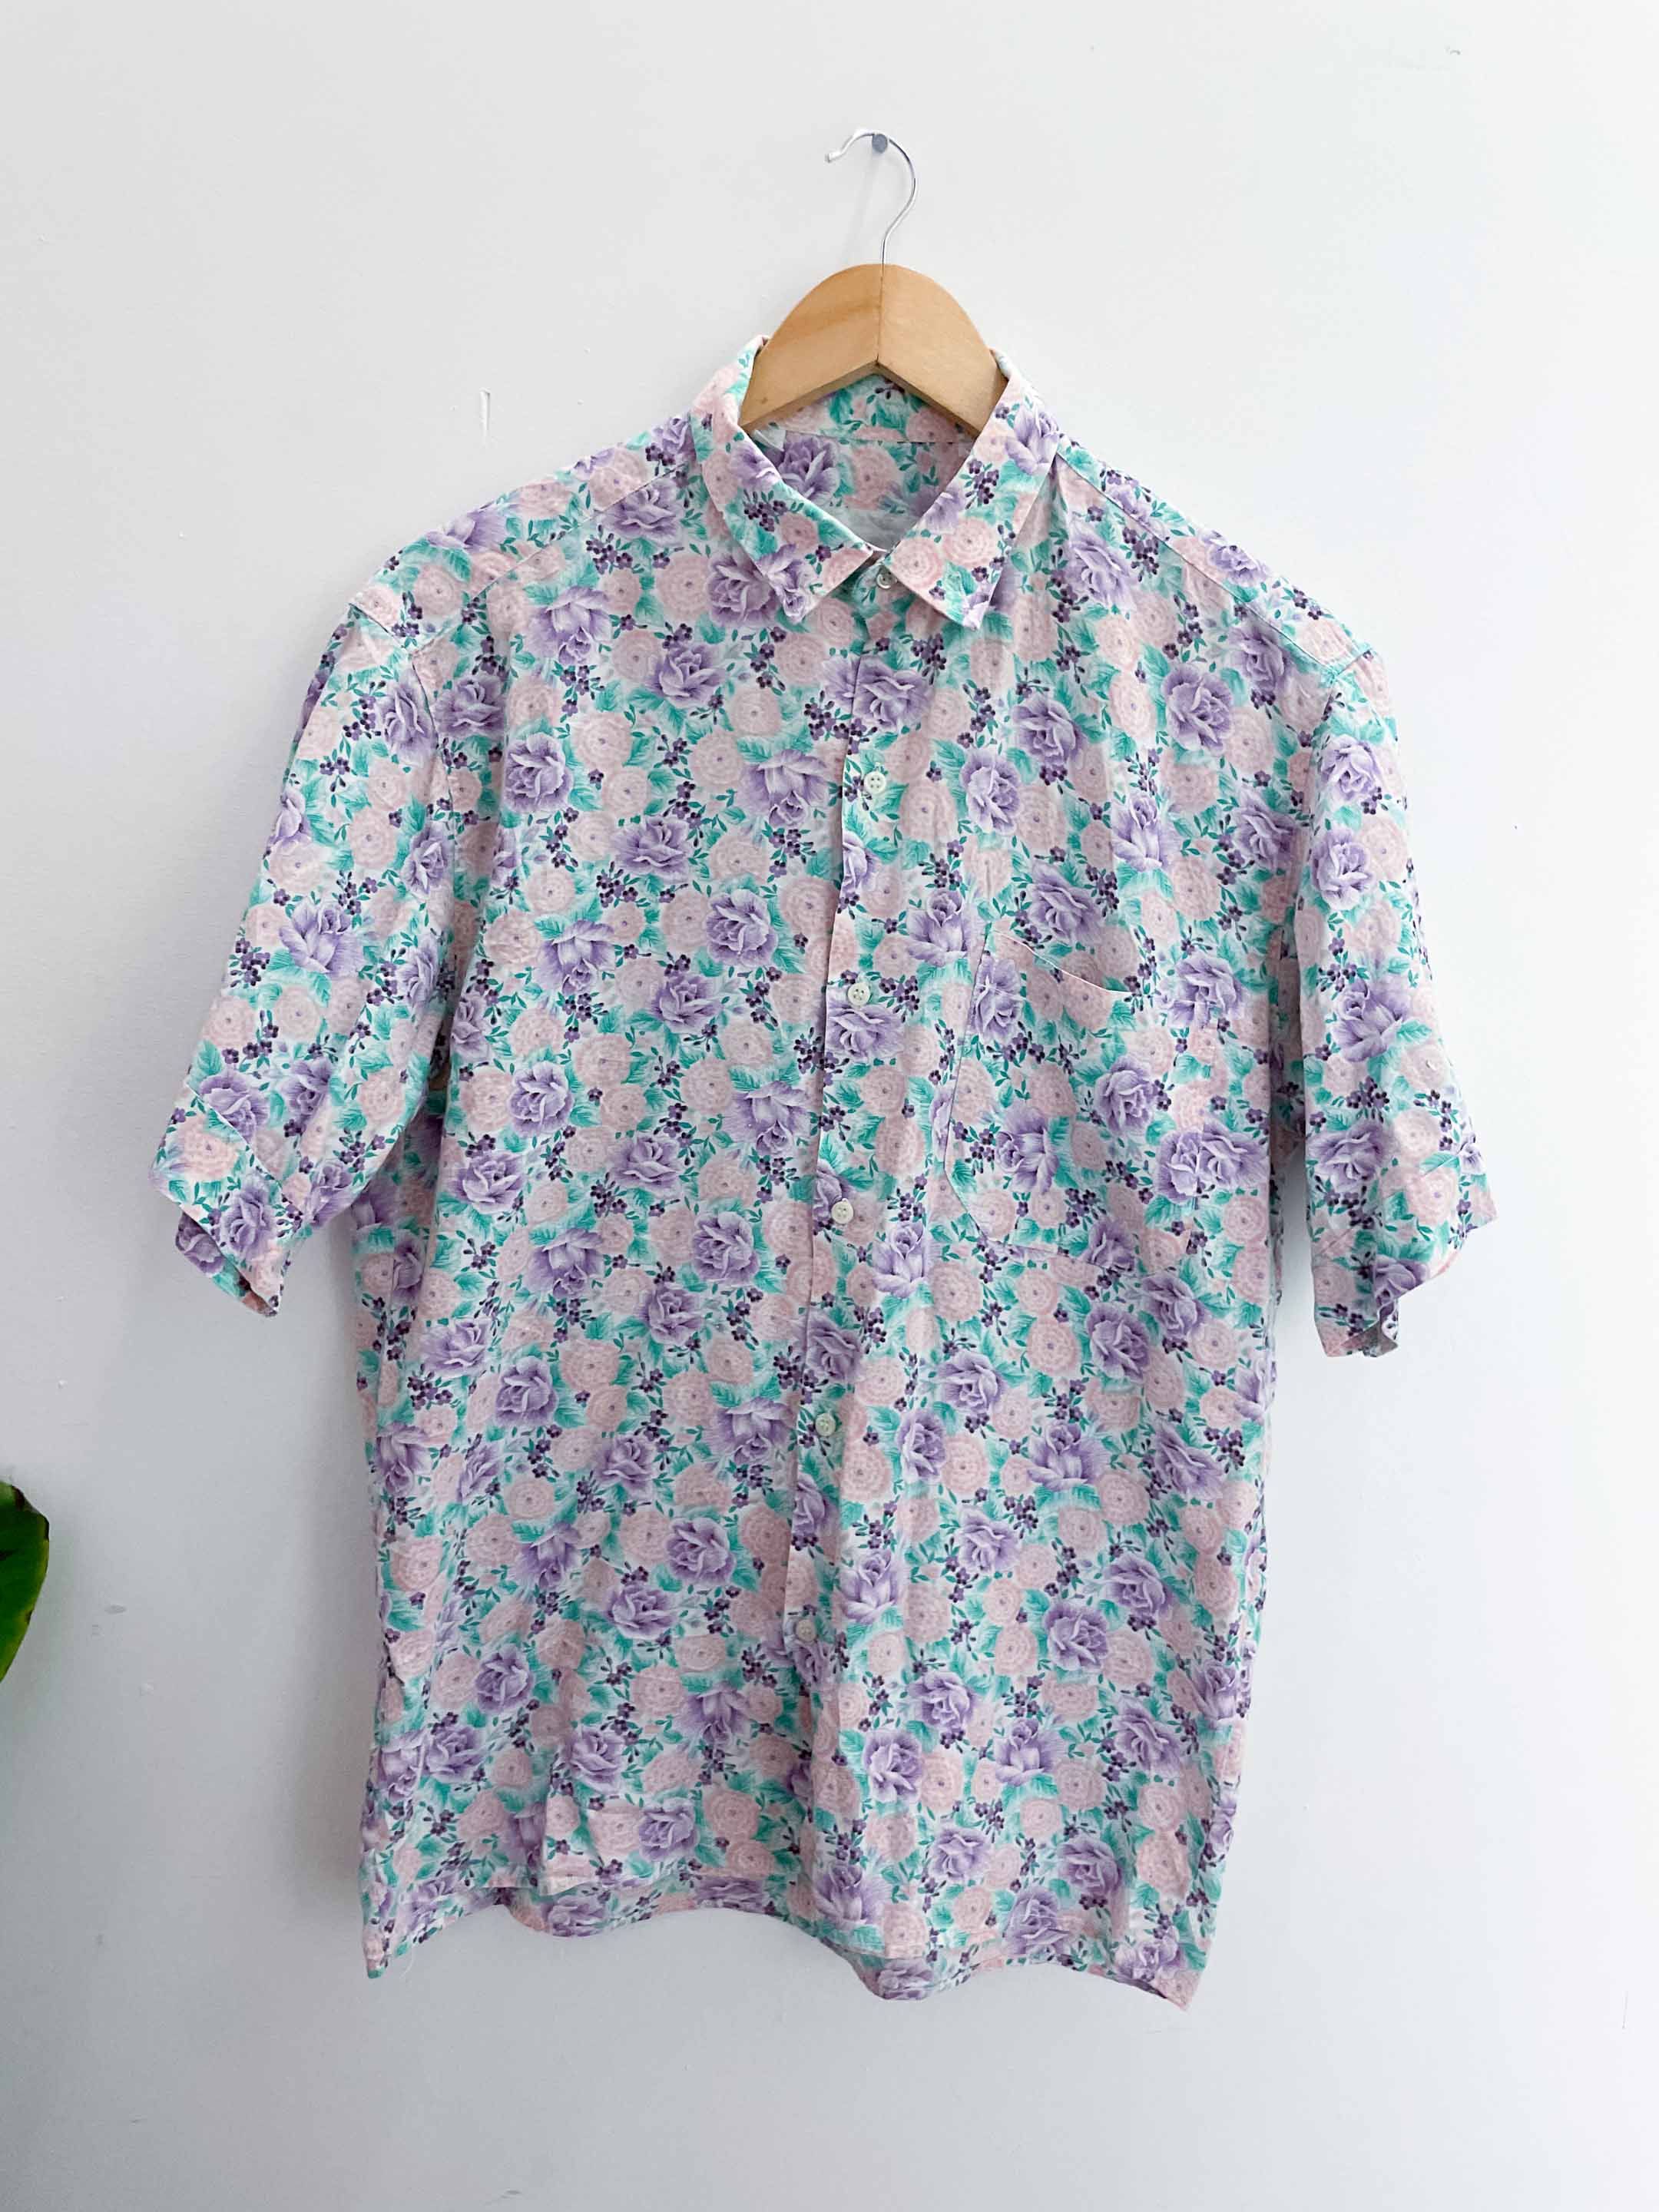 Vintage purple floral patterned mens short sleeve shirt size S